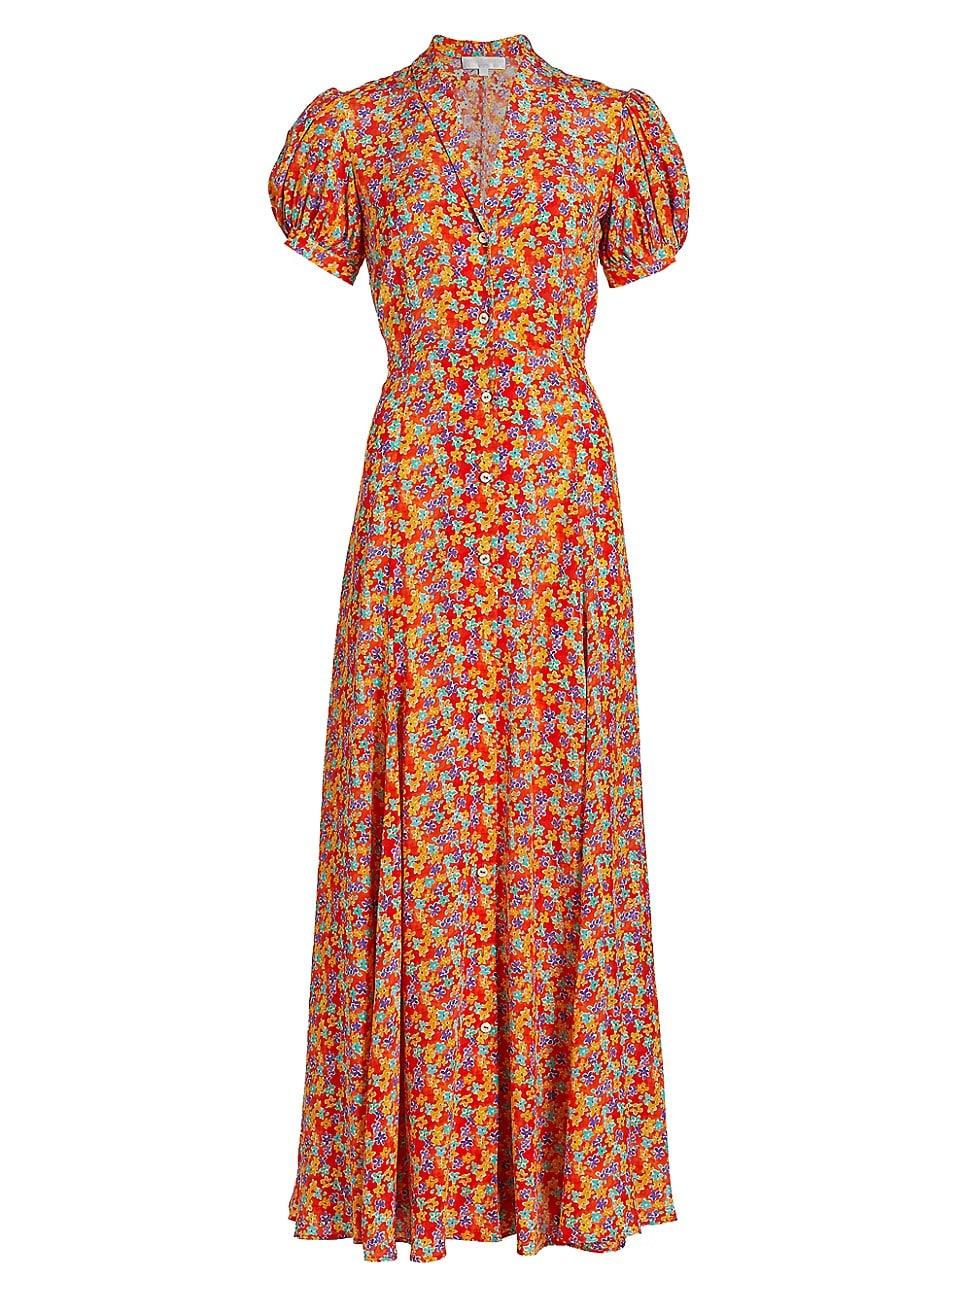 Caroline Constas Bel Silk Ditsy Floral Maxi Dress in Orange | Lyst